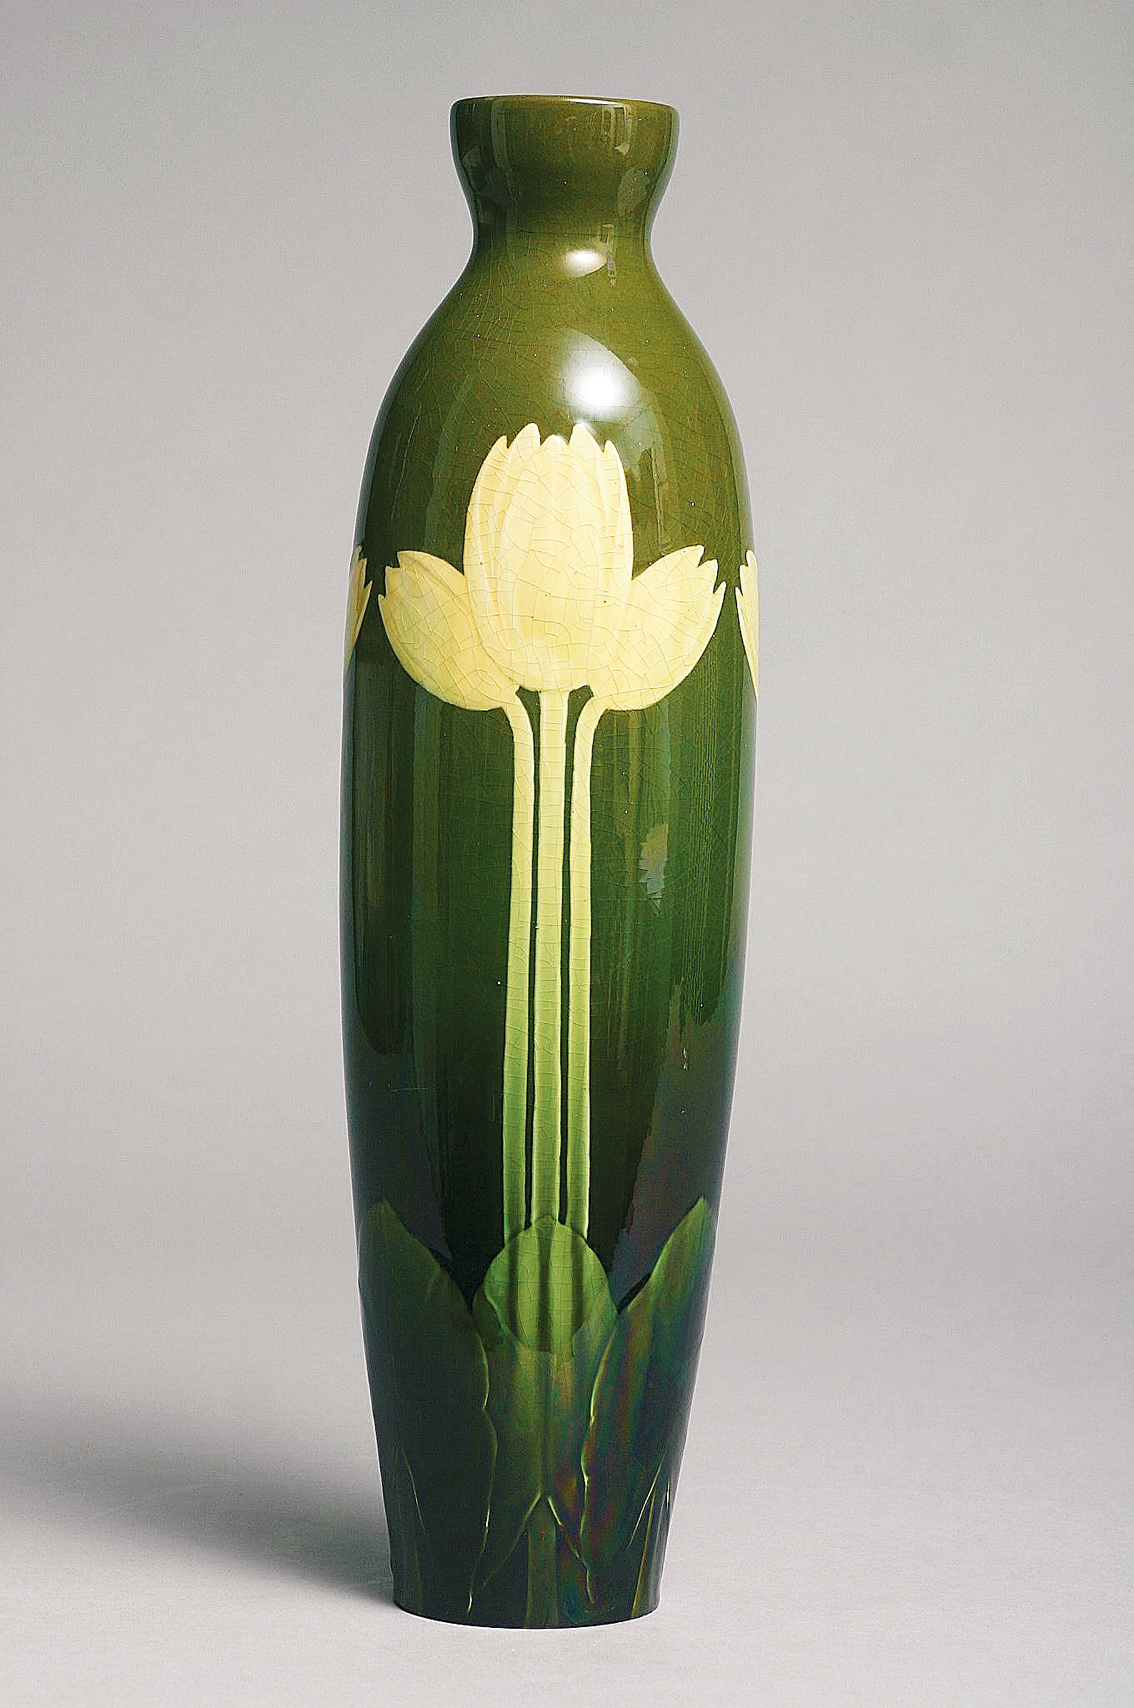 Große Jugendstil-Vase mit Tulpendekor vor Grünfond